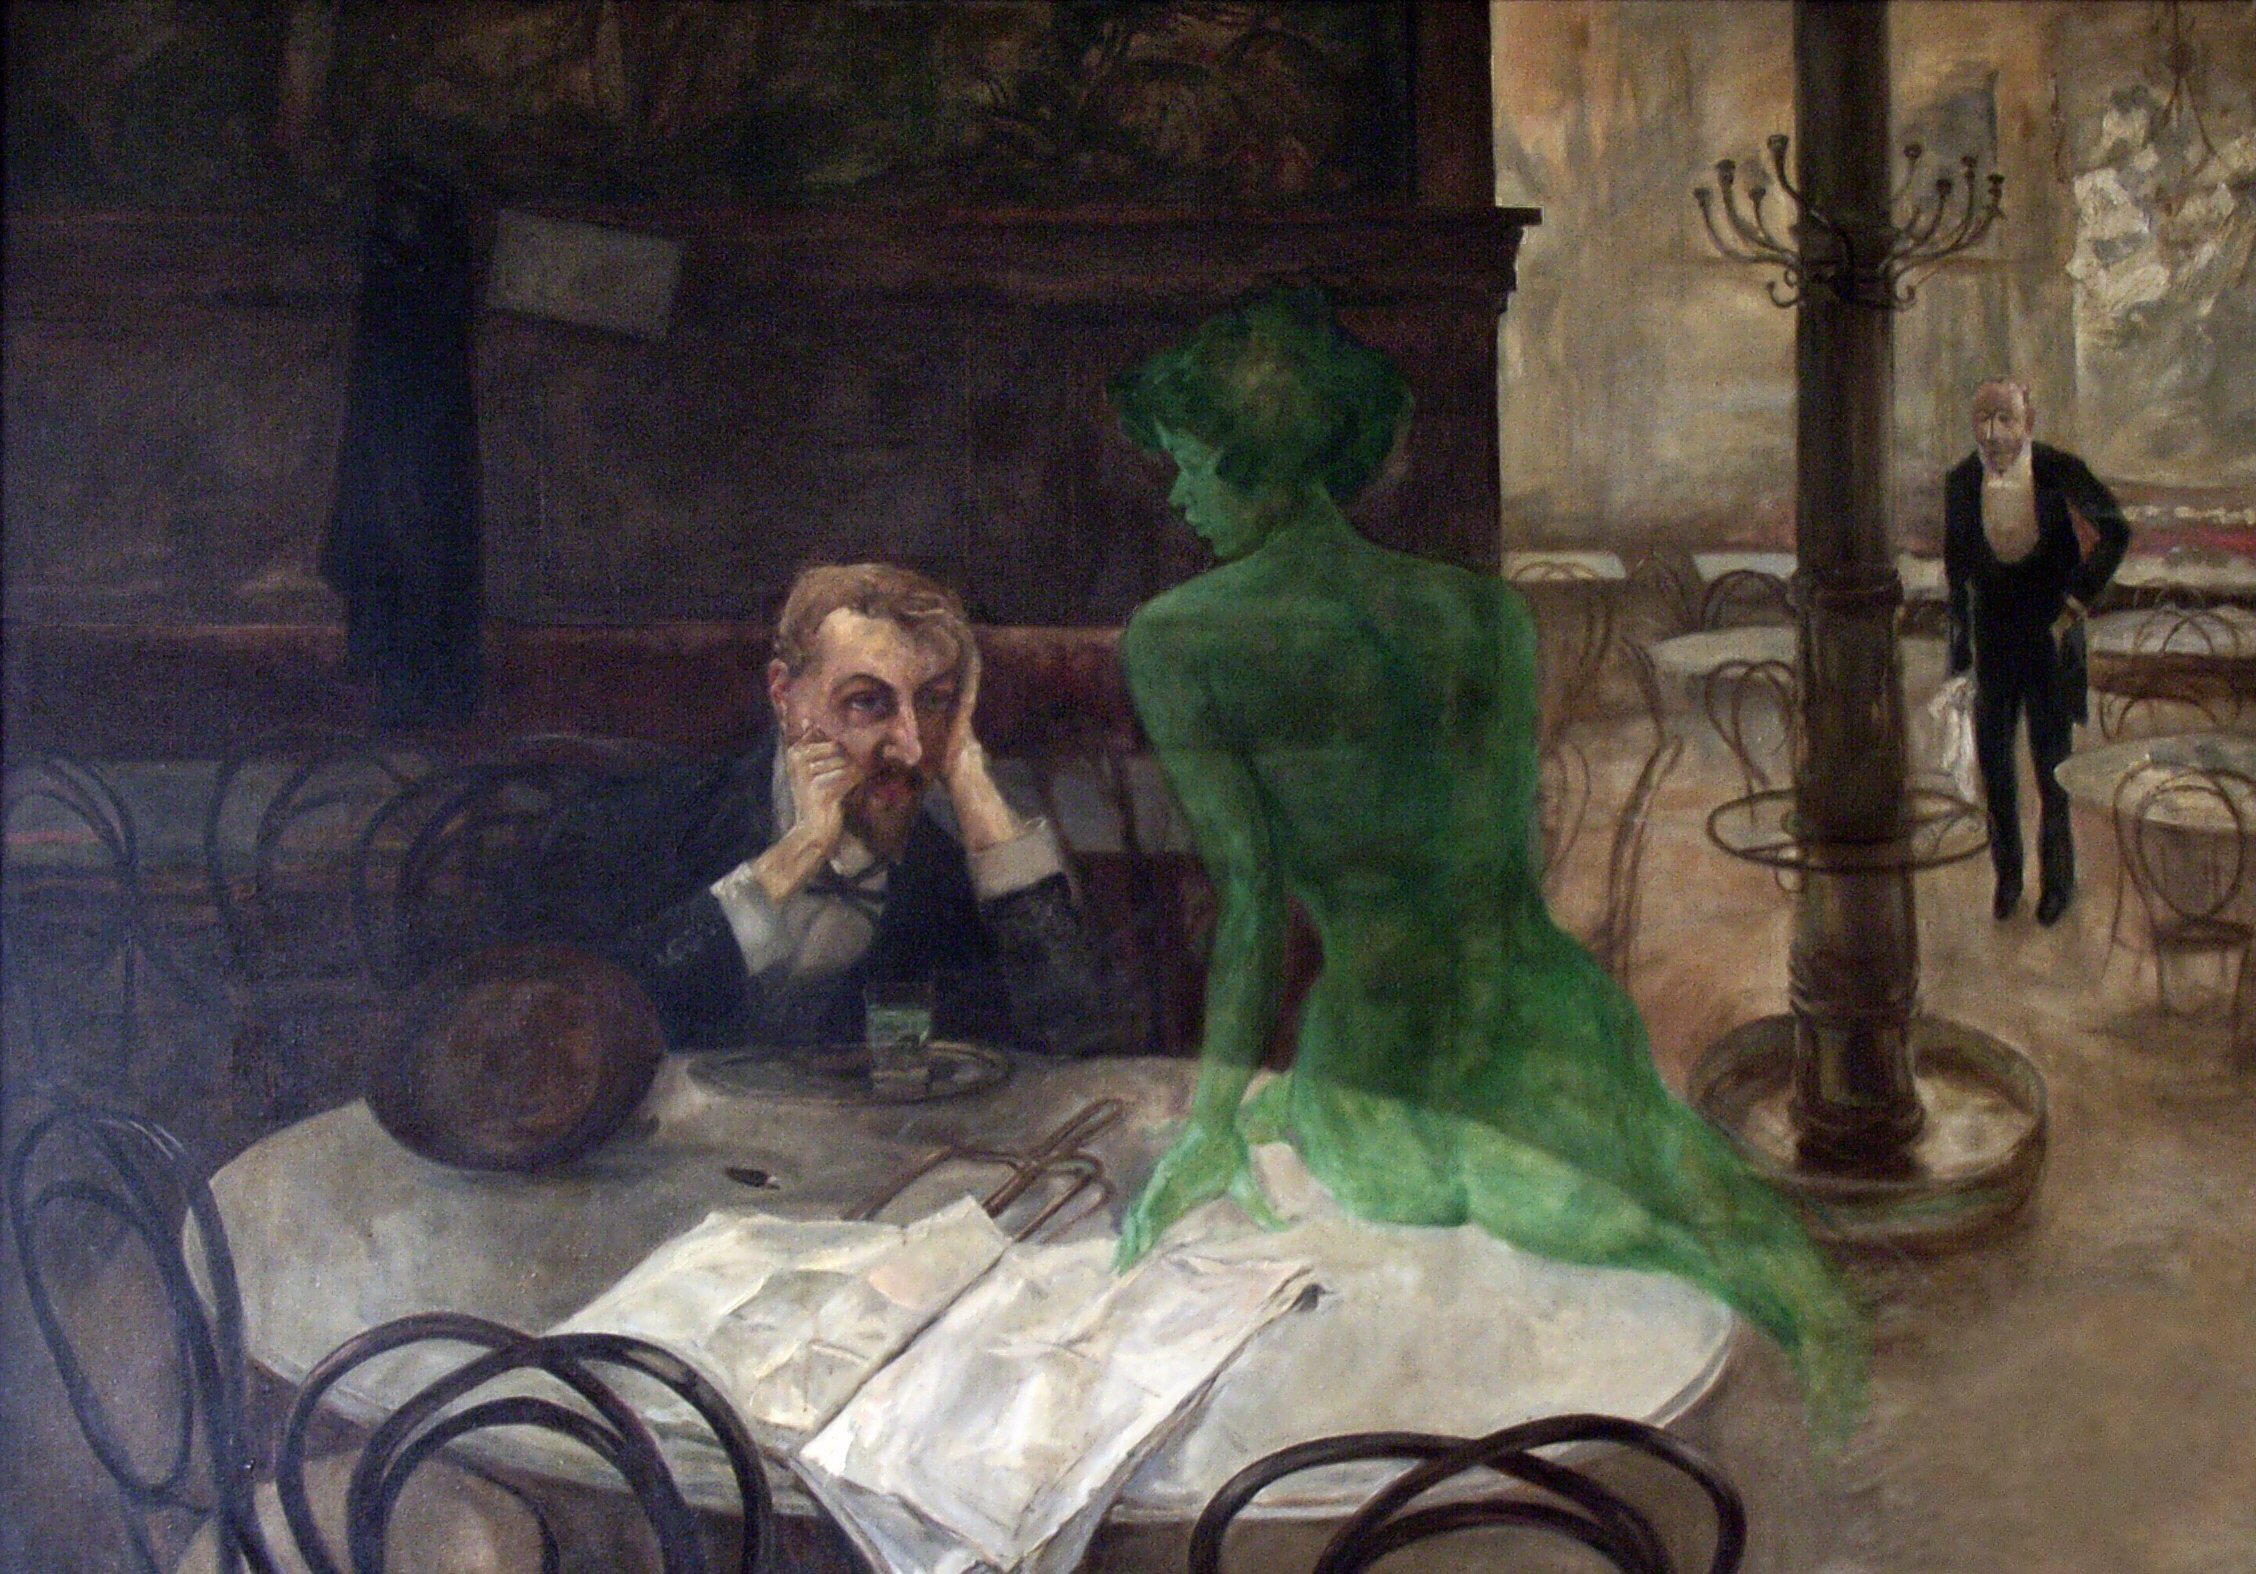 Piják absintu by Viktor Oliva - 1901 